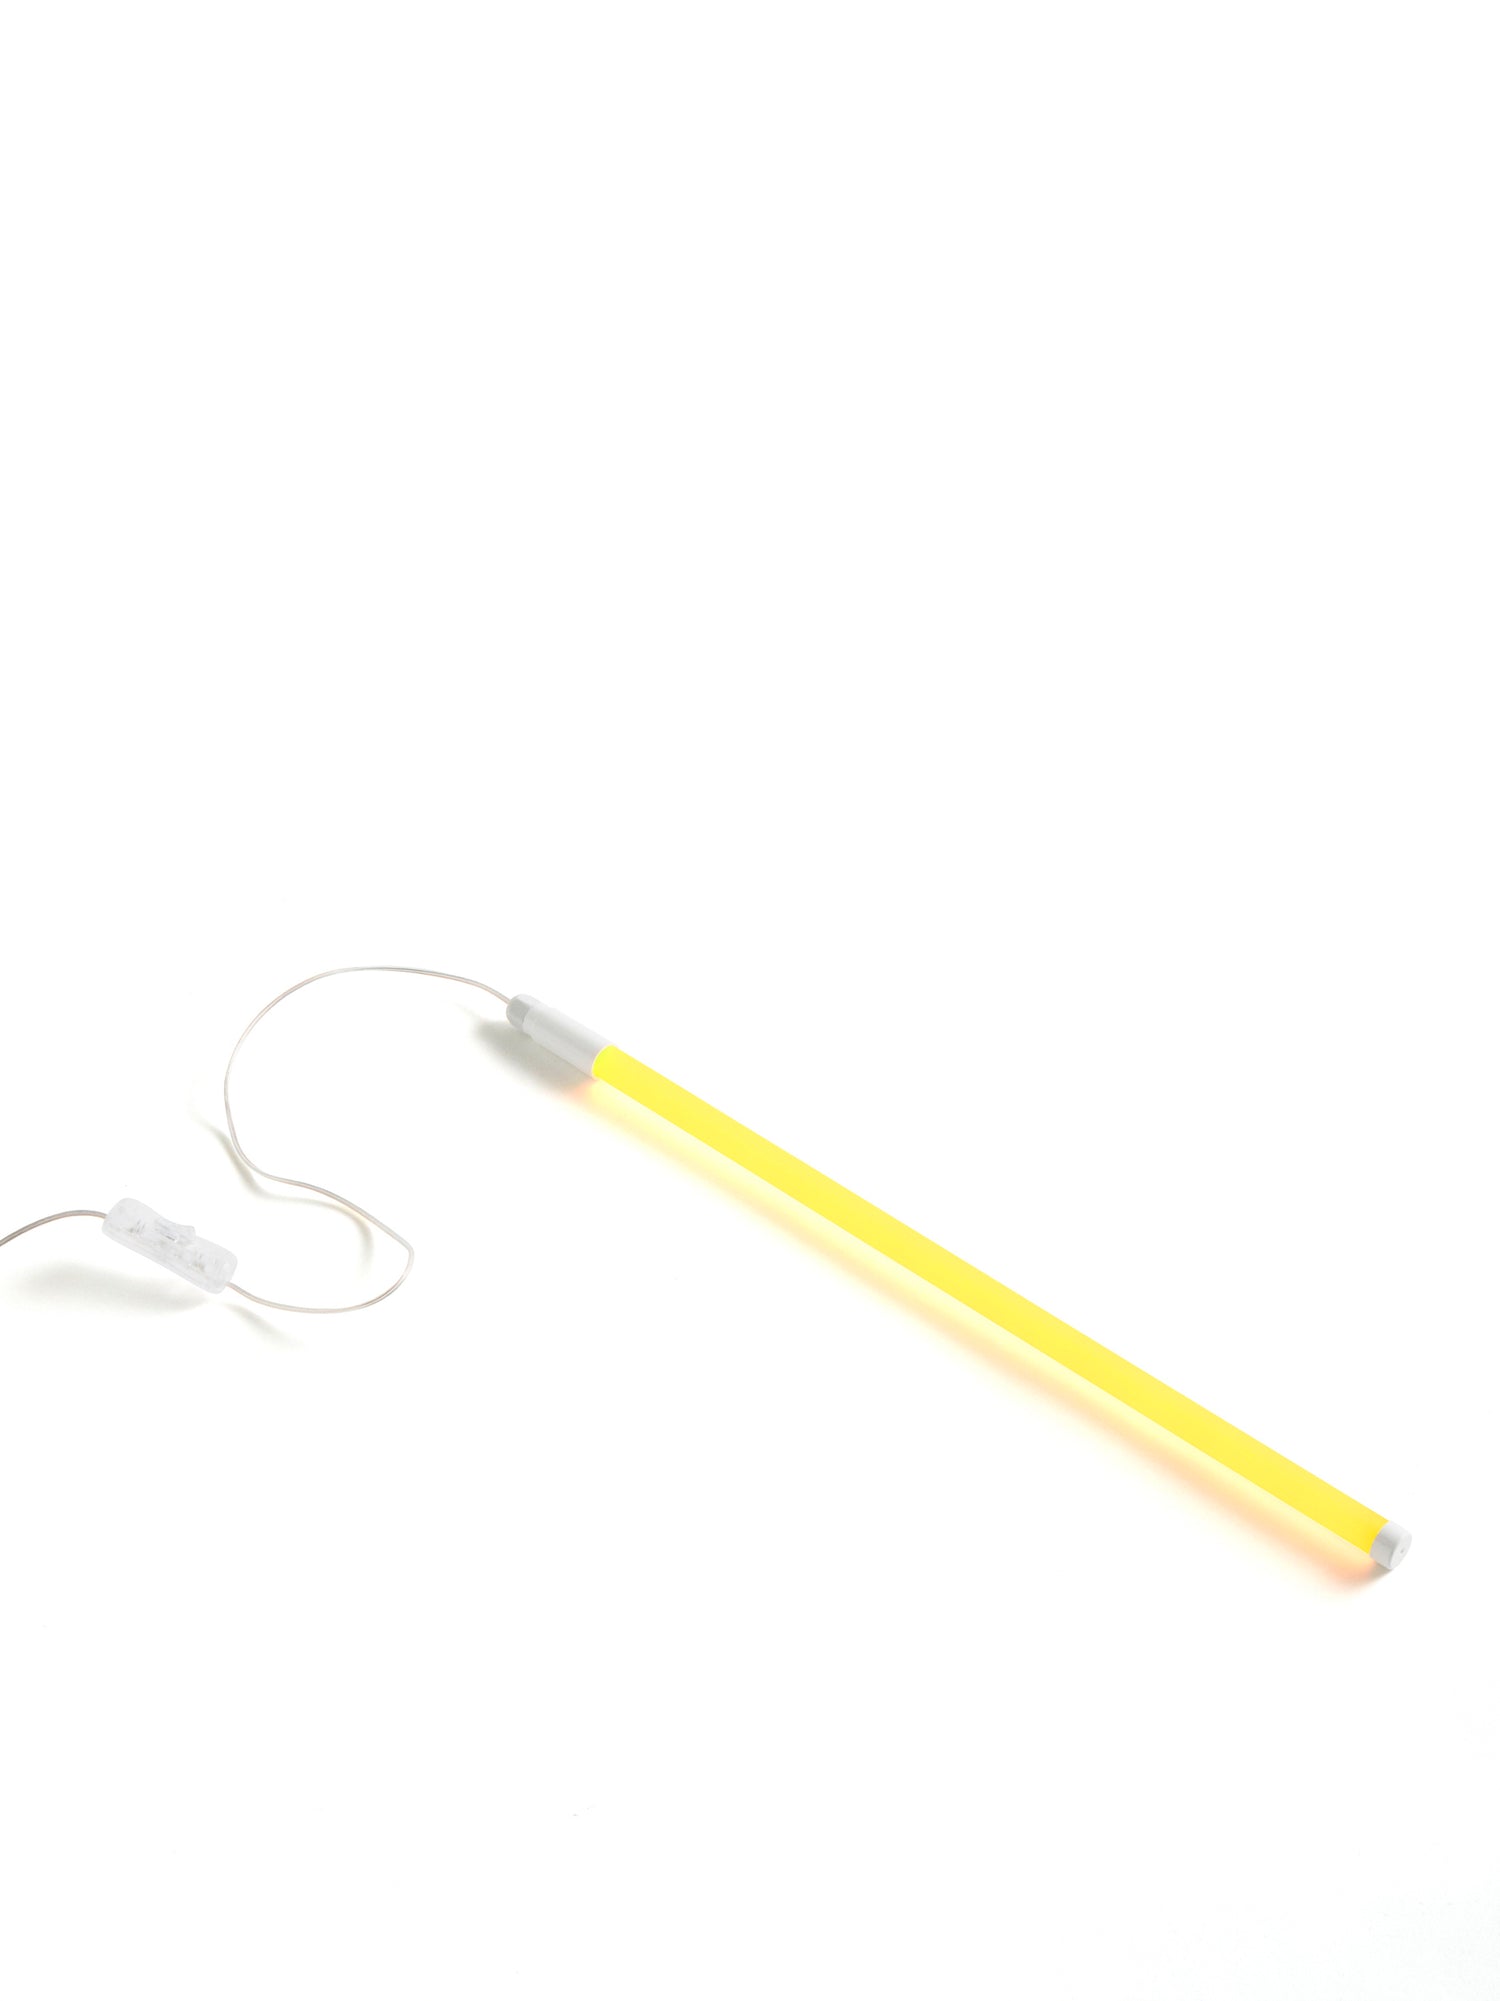 Lamp neon tube led, slim & 50 cm (3 colours)